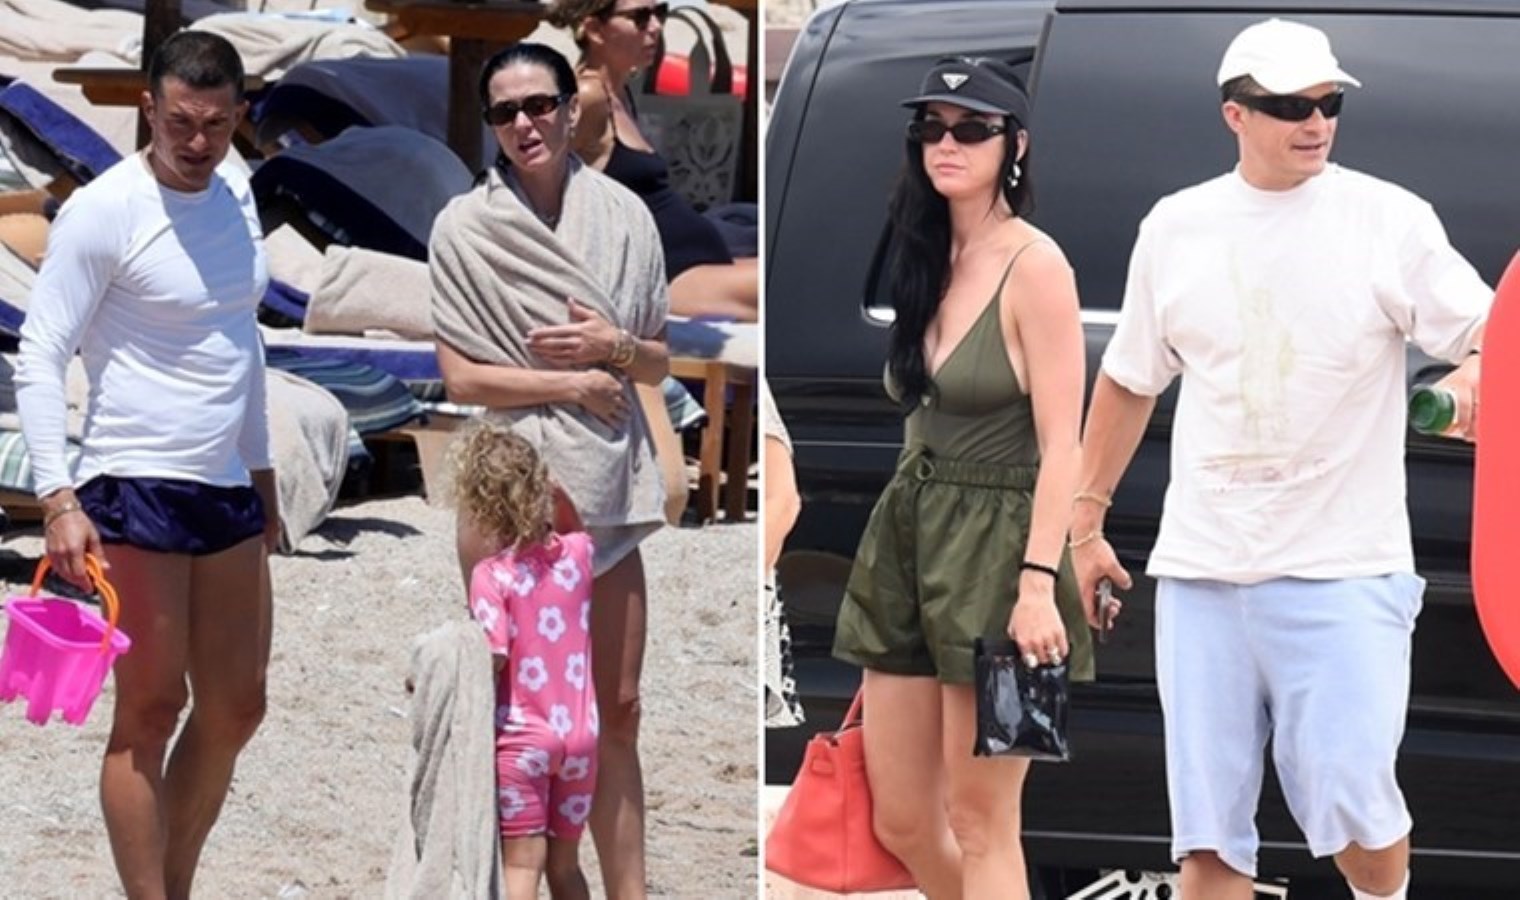 Ünlü müzisyen Katy Perry ile oyuncu Orlando Bloom İtalya tatilinde görüntülendi